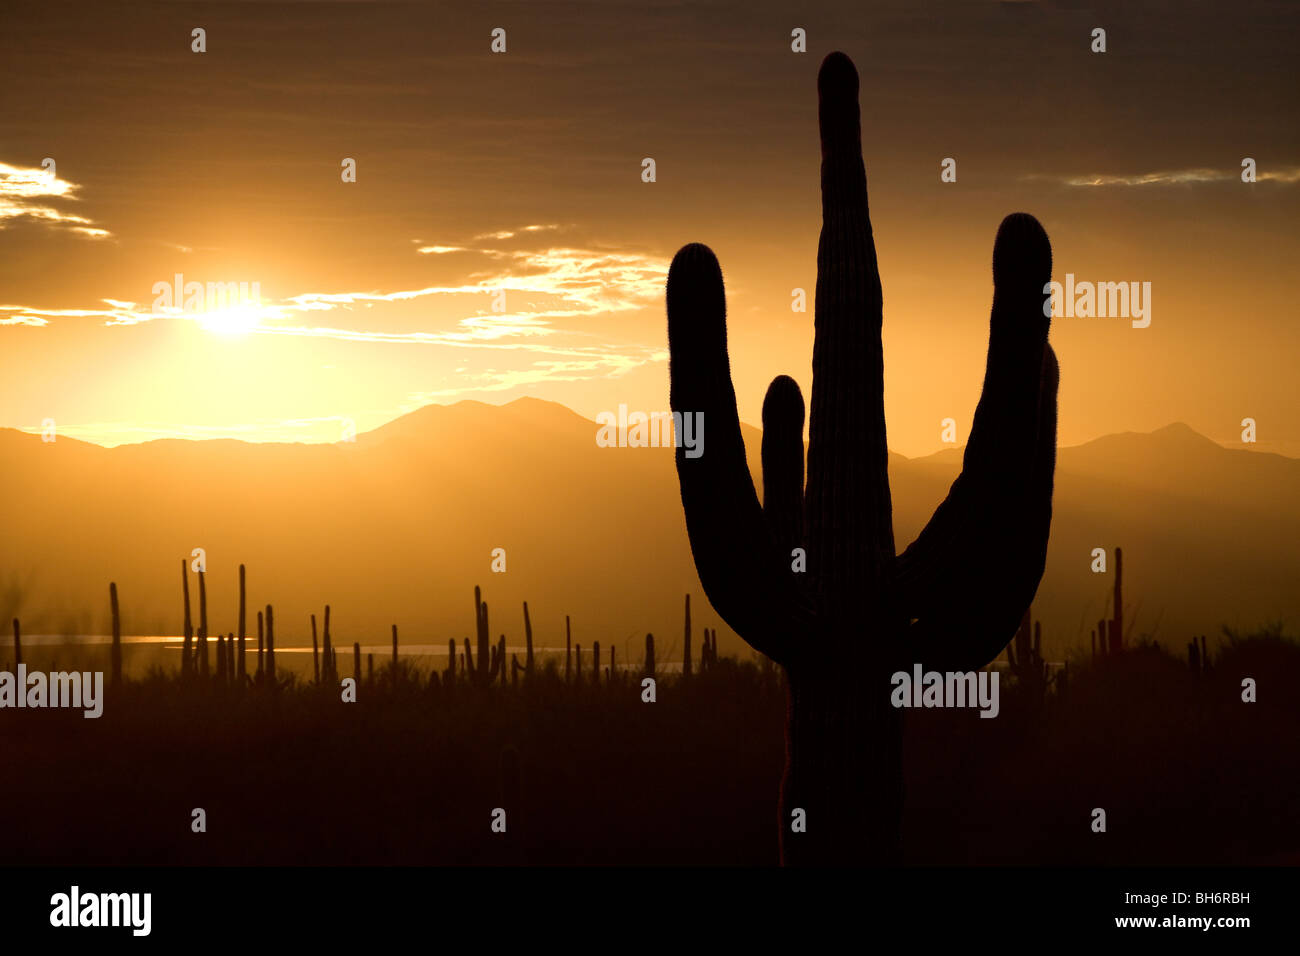 Saguaro cactus silhouetté au coucher du soleil à Tucson en Arizona dans l'ouest de Saguaro National Park. Banque D'Images